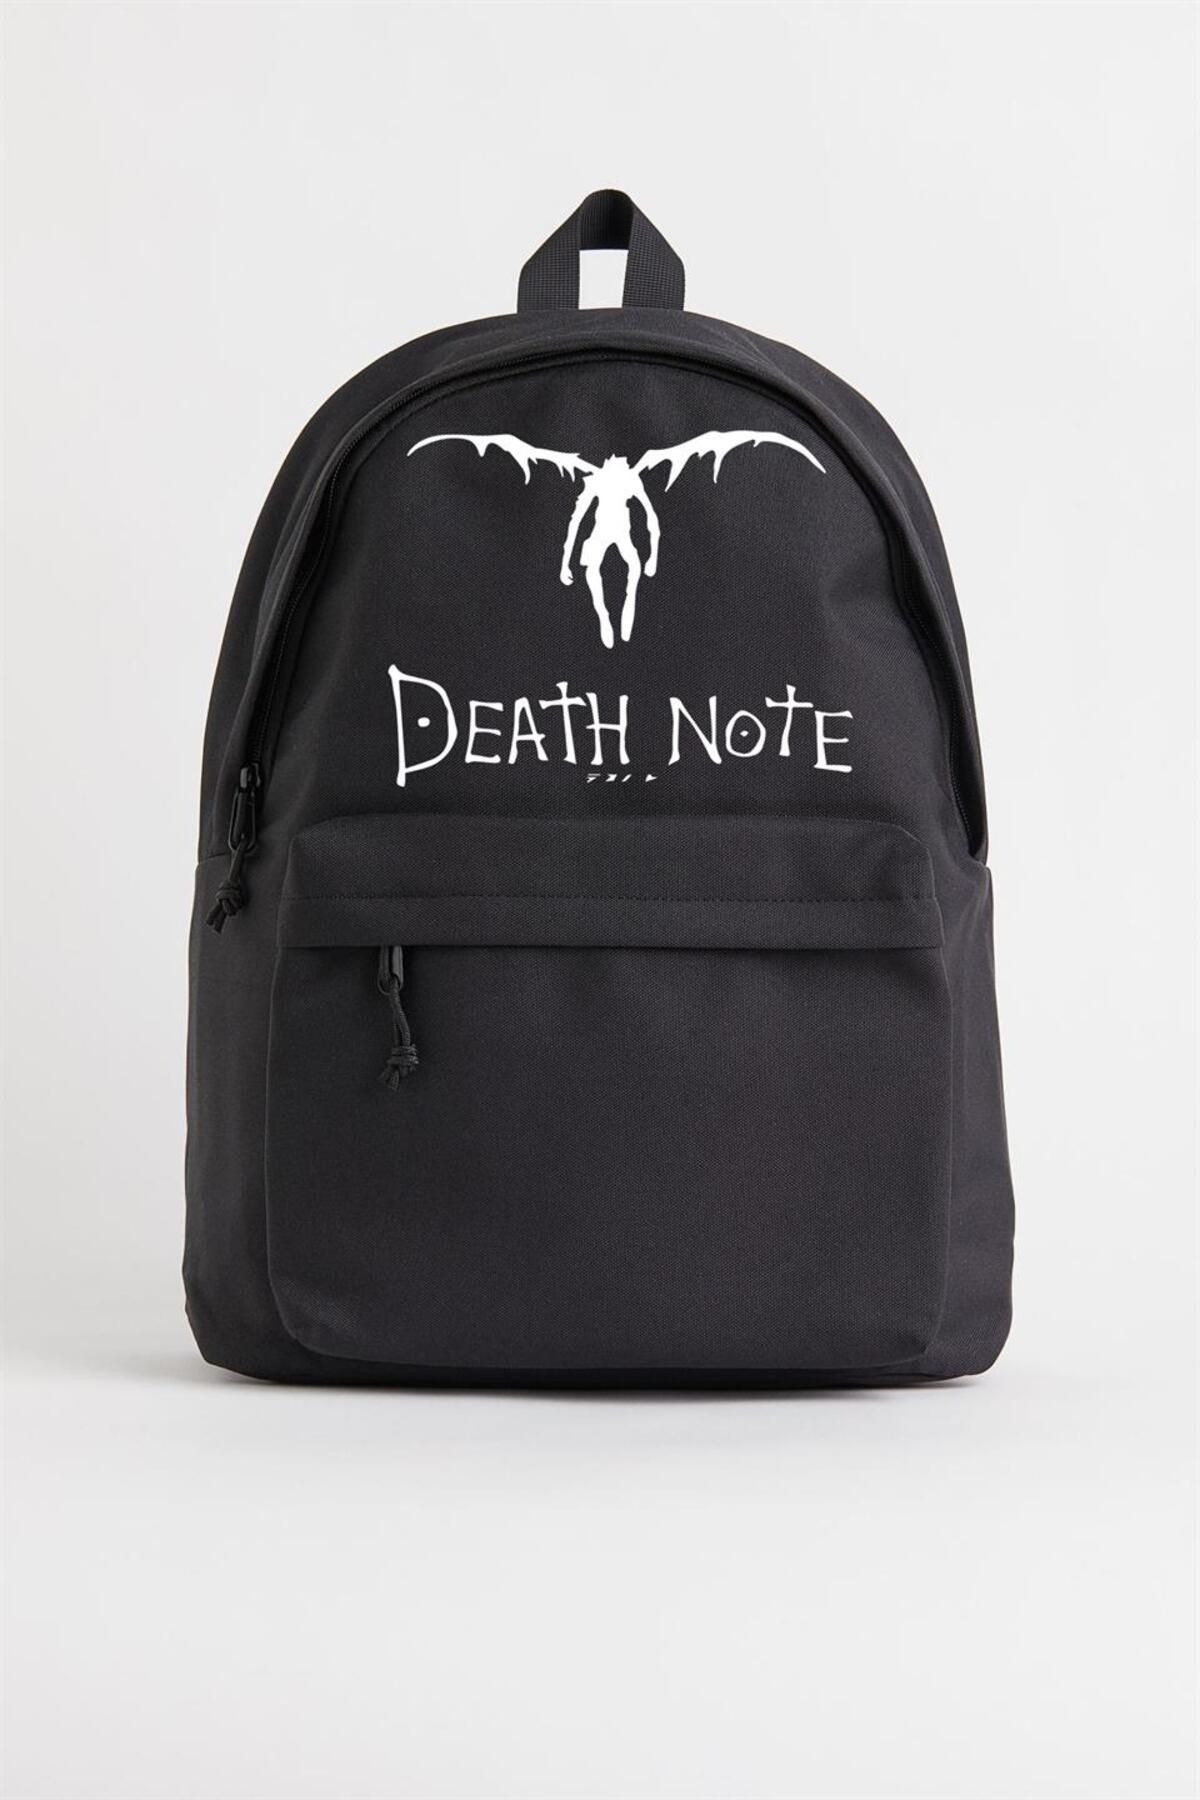 Gofeel Death Note Winged L Baskılı Unisex Sırt Çantası Champs